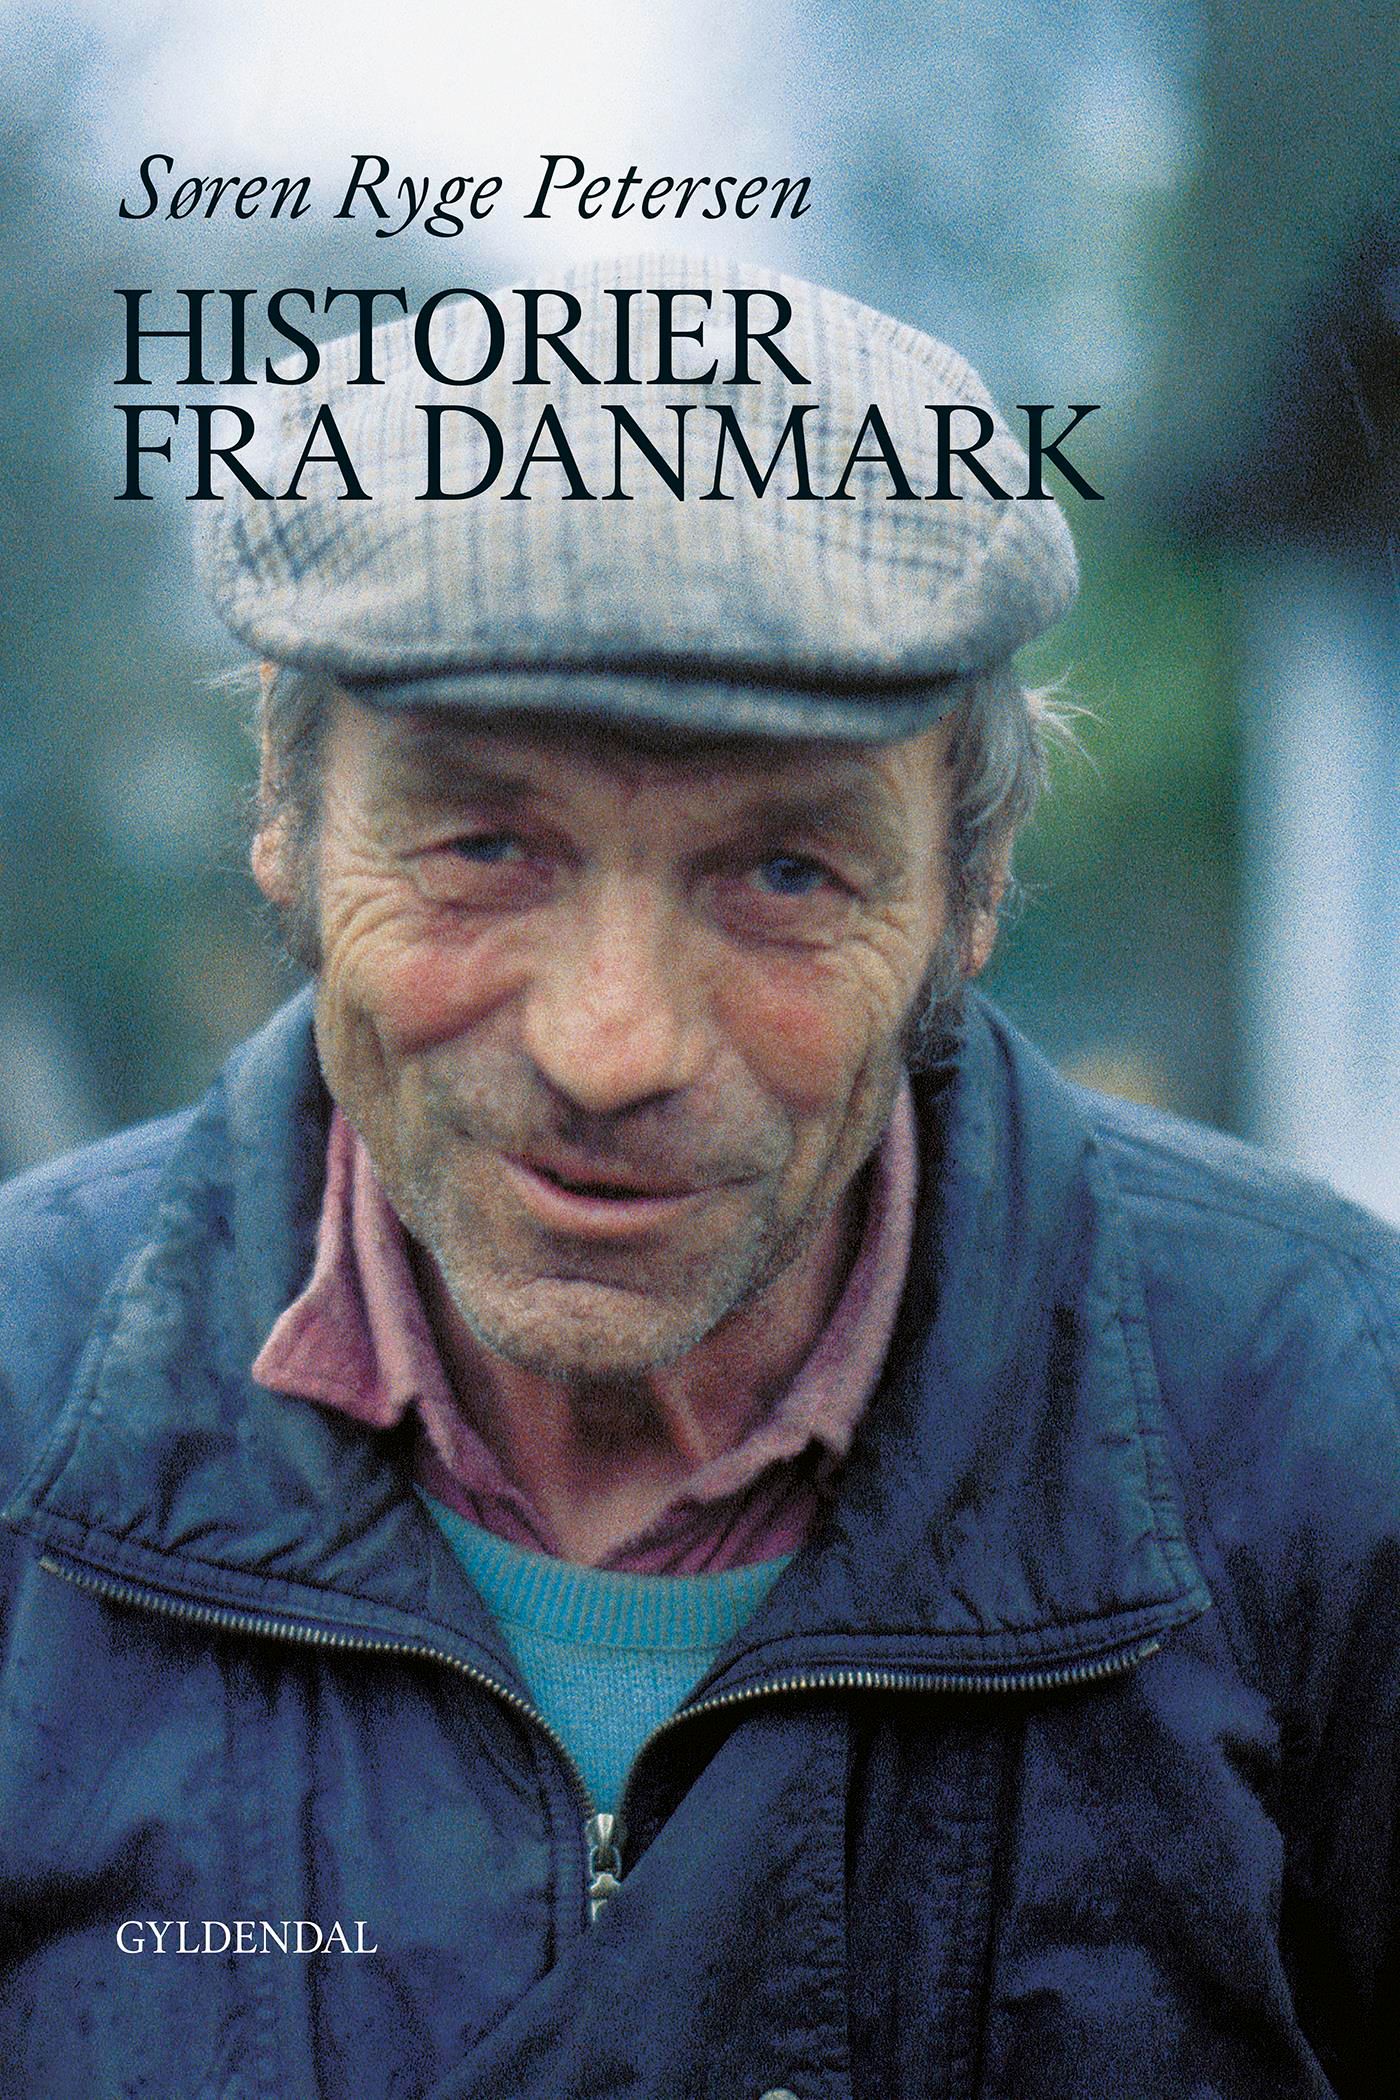 Historier fra Danmark, eBook by Søren Ryge Petersen